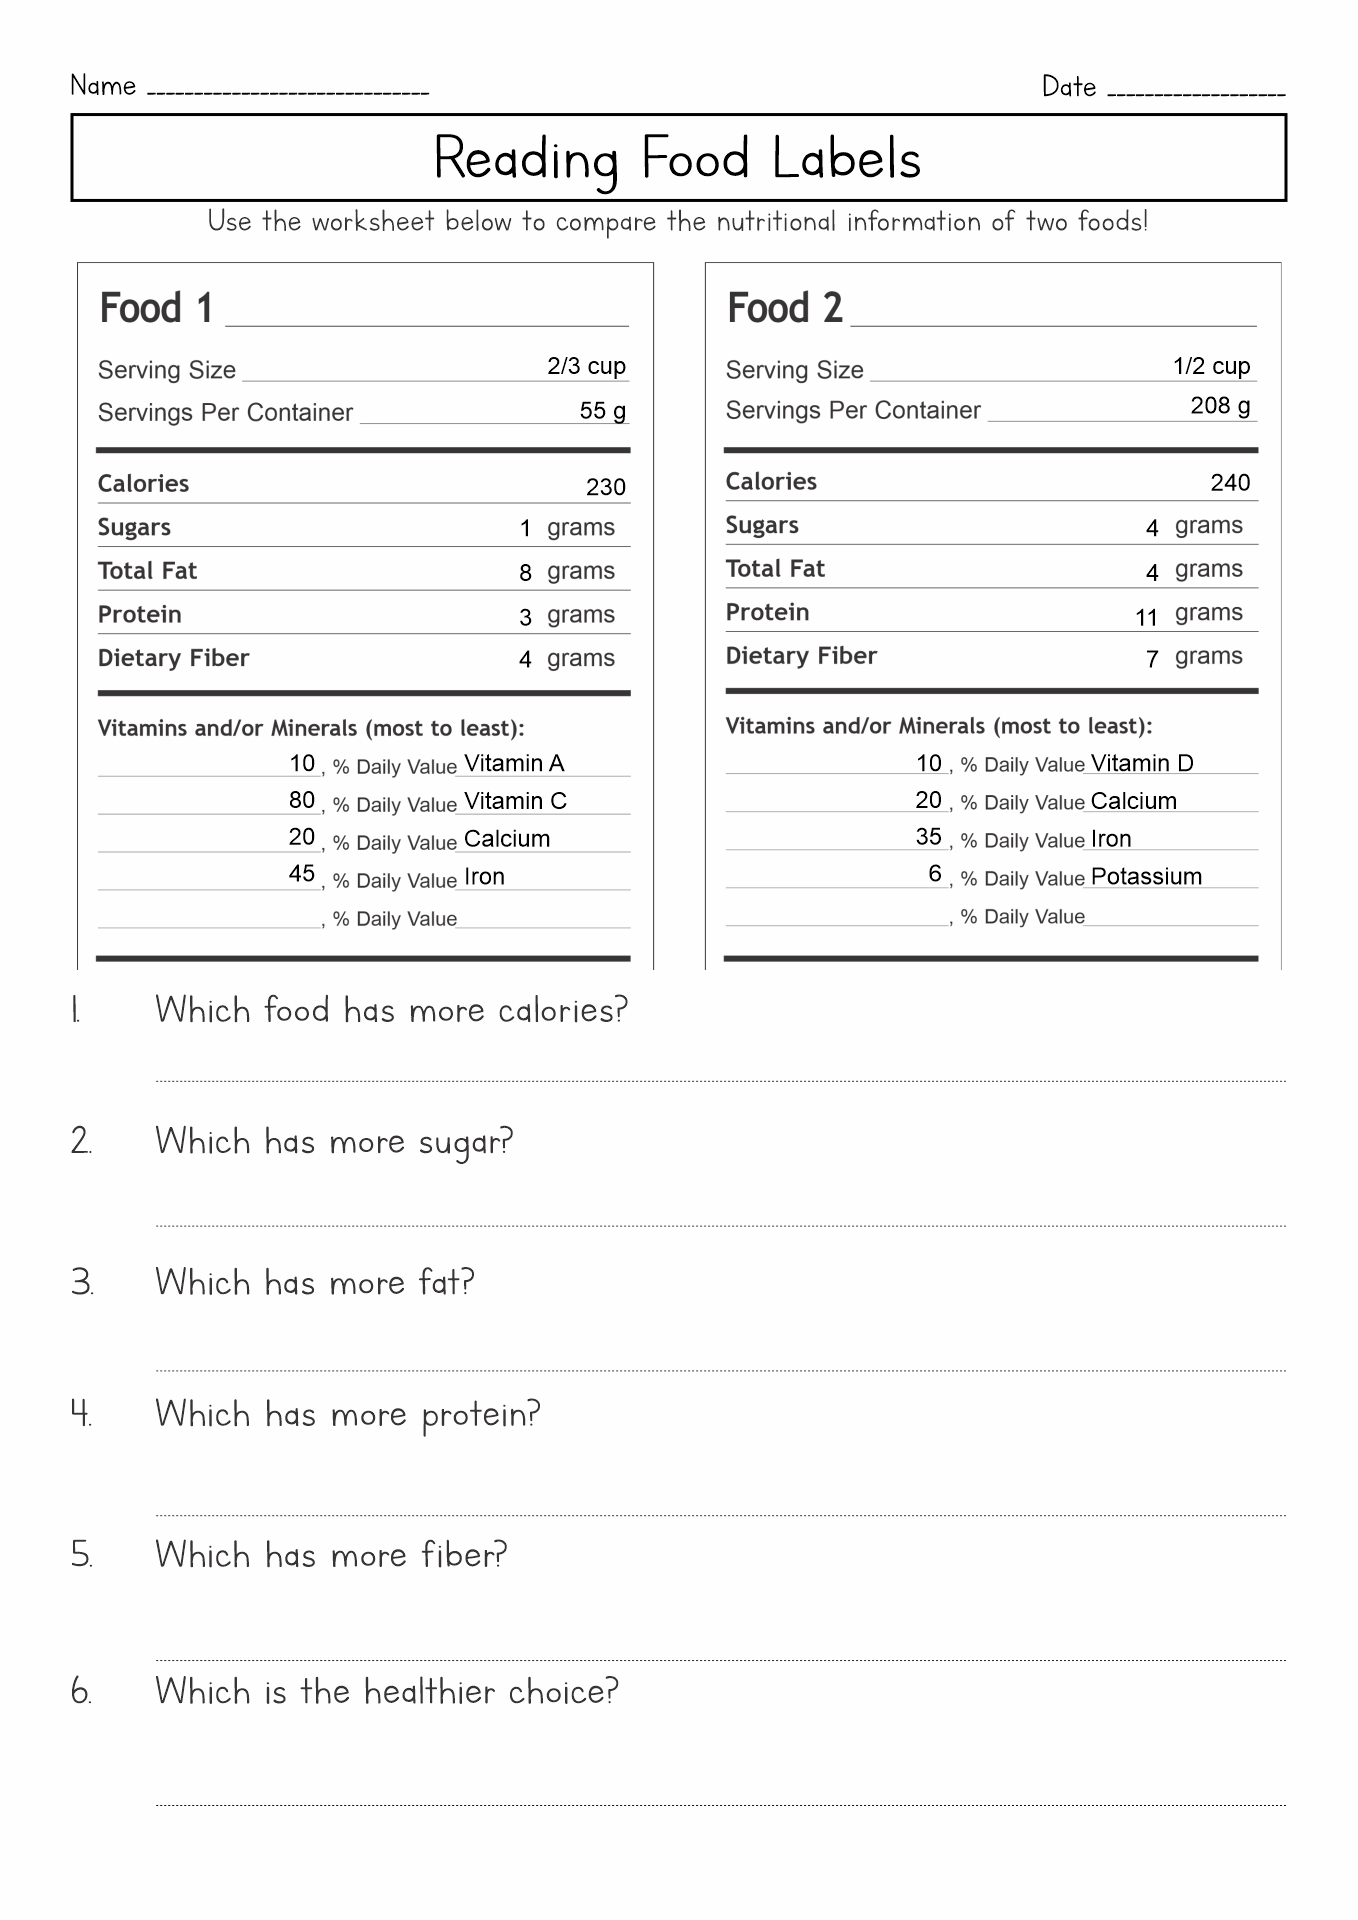 Worksheets Reading Food Labels Image